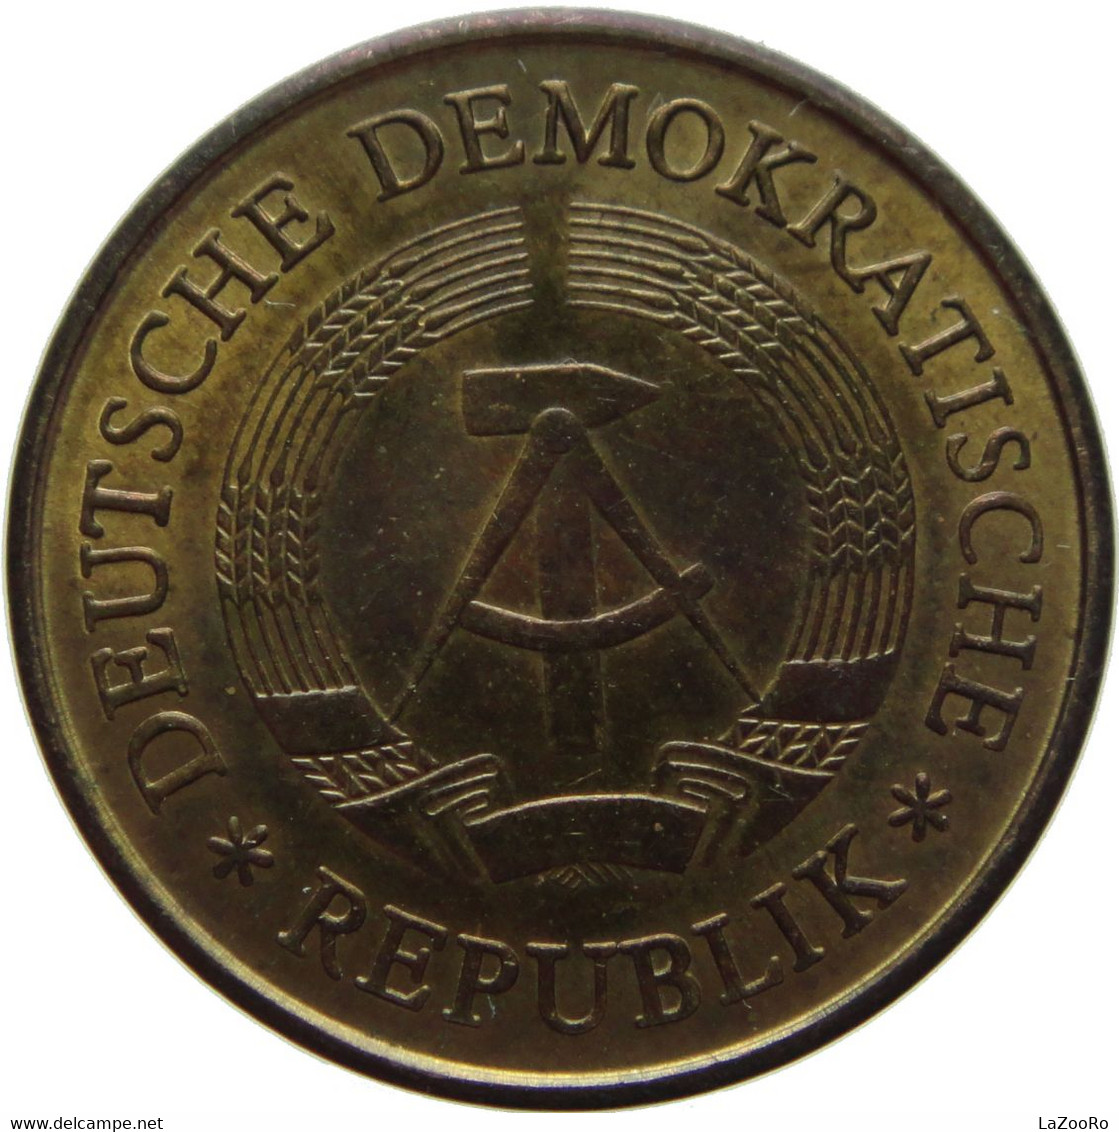 LaZooRo: East Germany 20 Pfennig 1969 UNC - 20 Pfennig